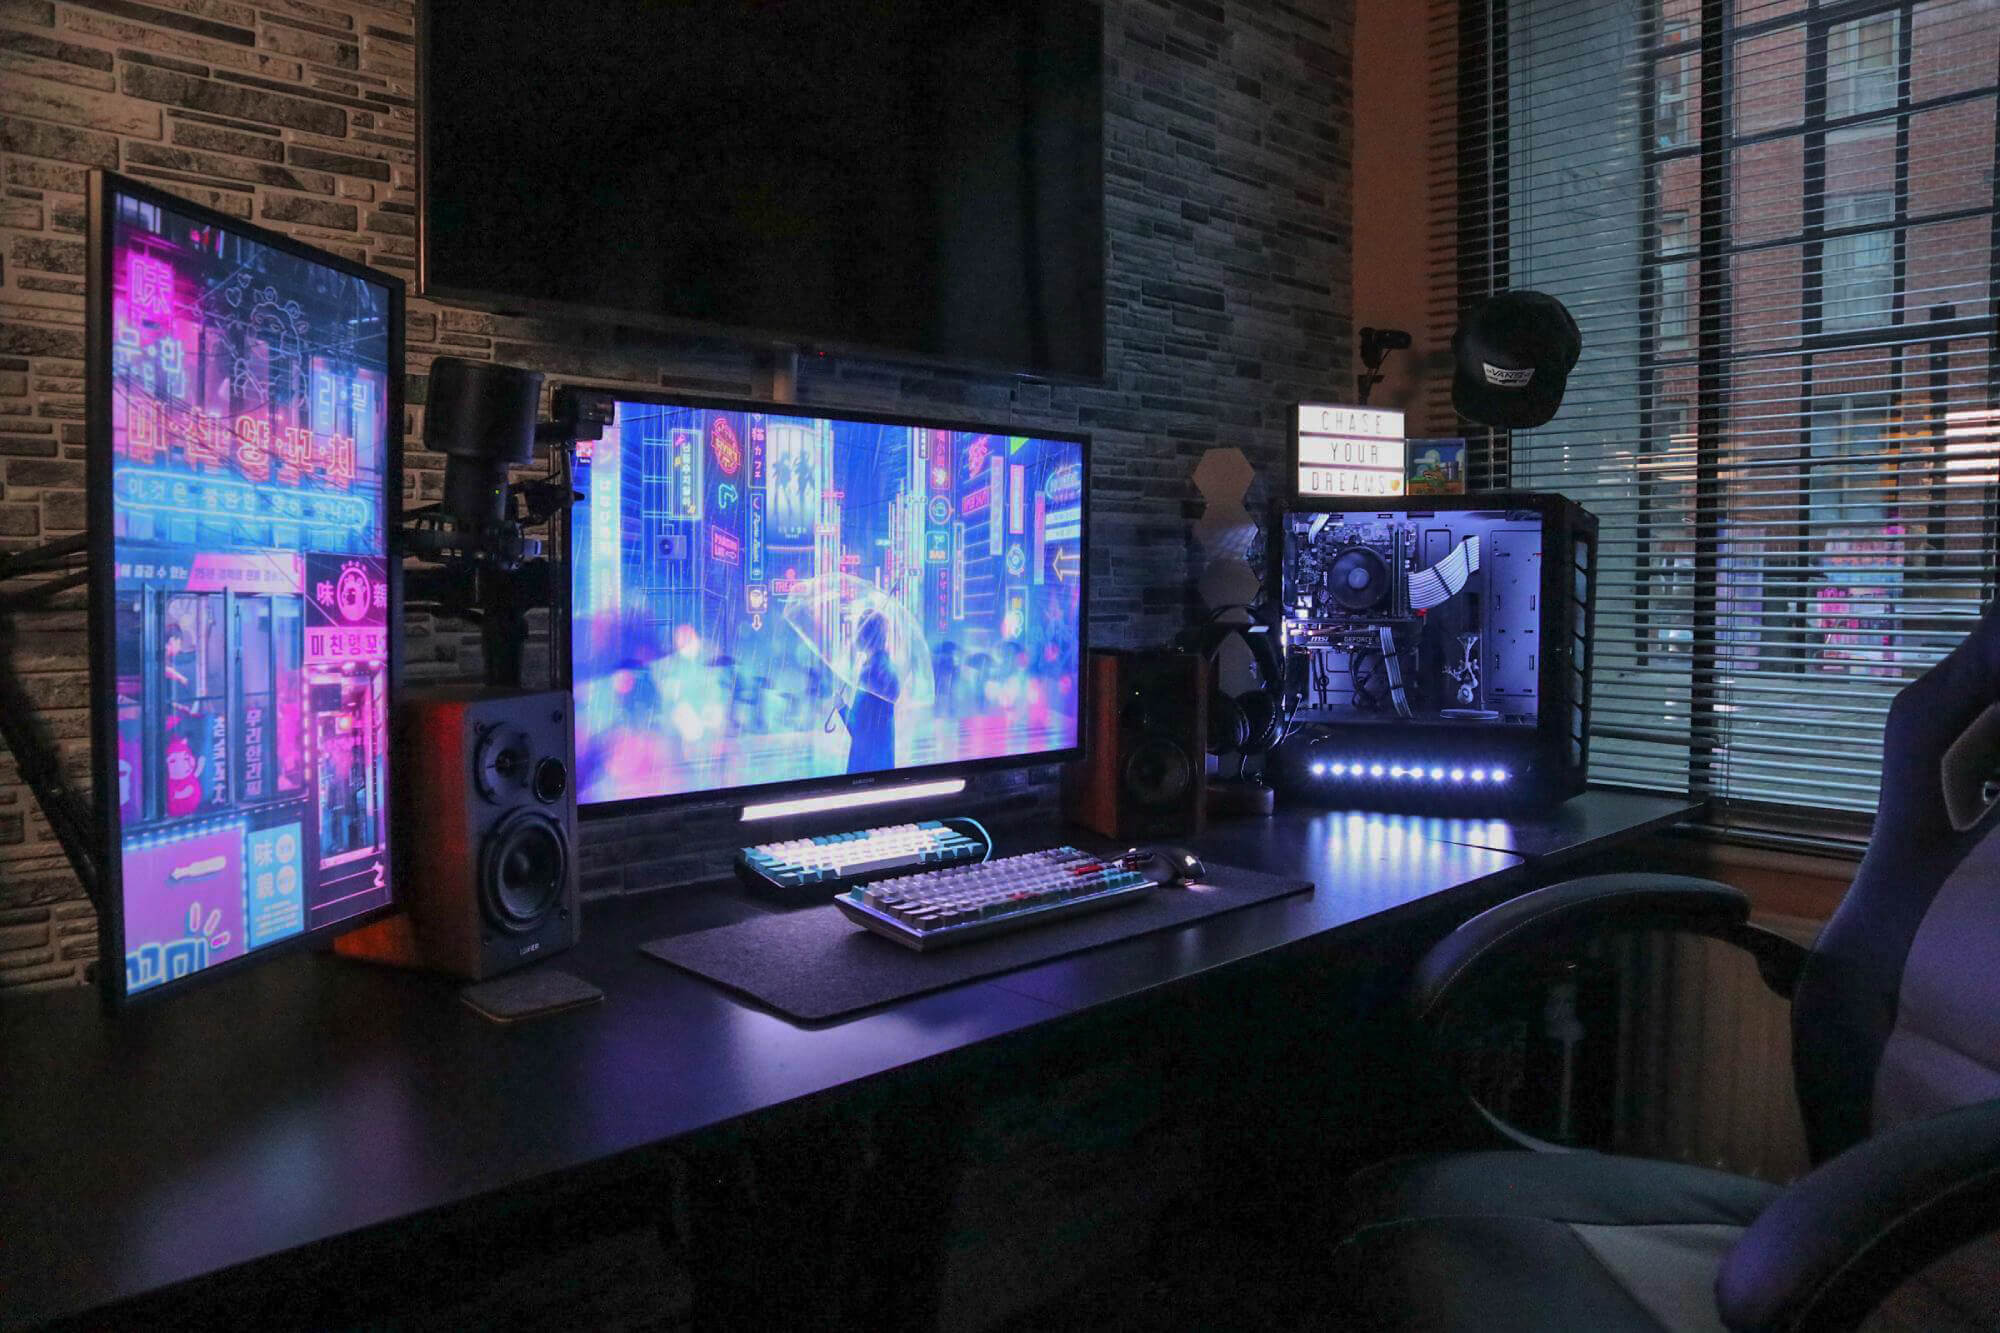 Twitch Streaming Desk Setup by DarkMatrixZero in the UK